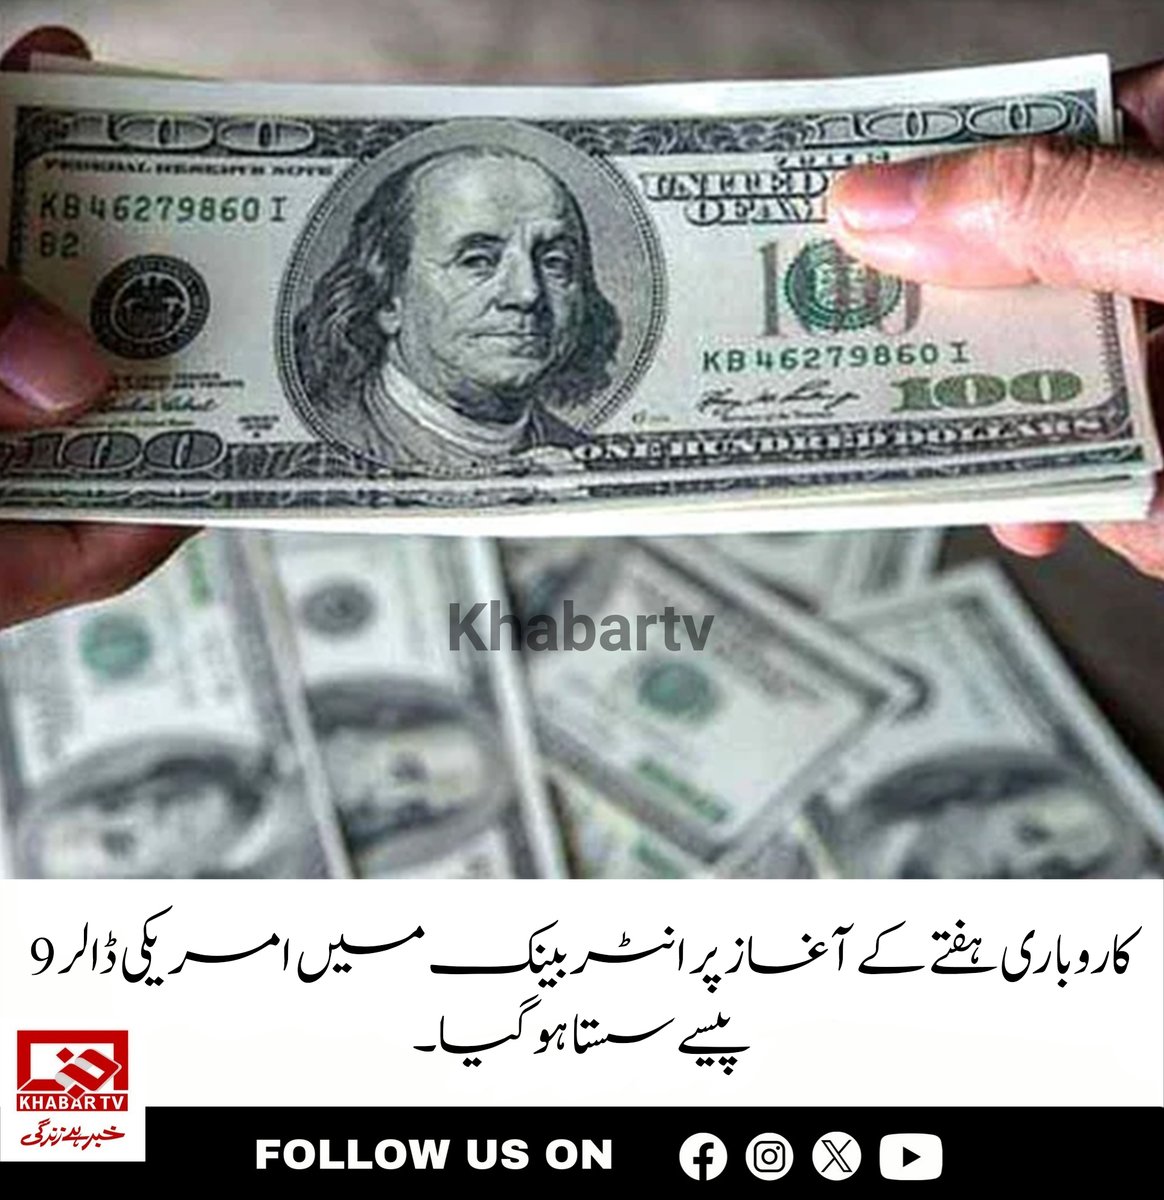 انٹر بینک: ڈالر 279 روپے 50 پیسے کا ہو گیا
#DollarPrice